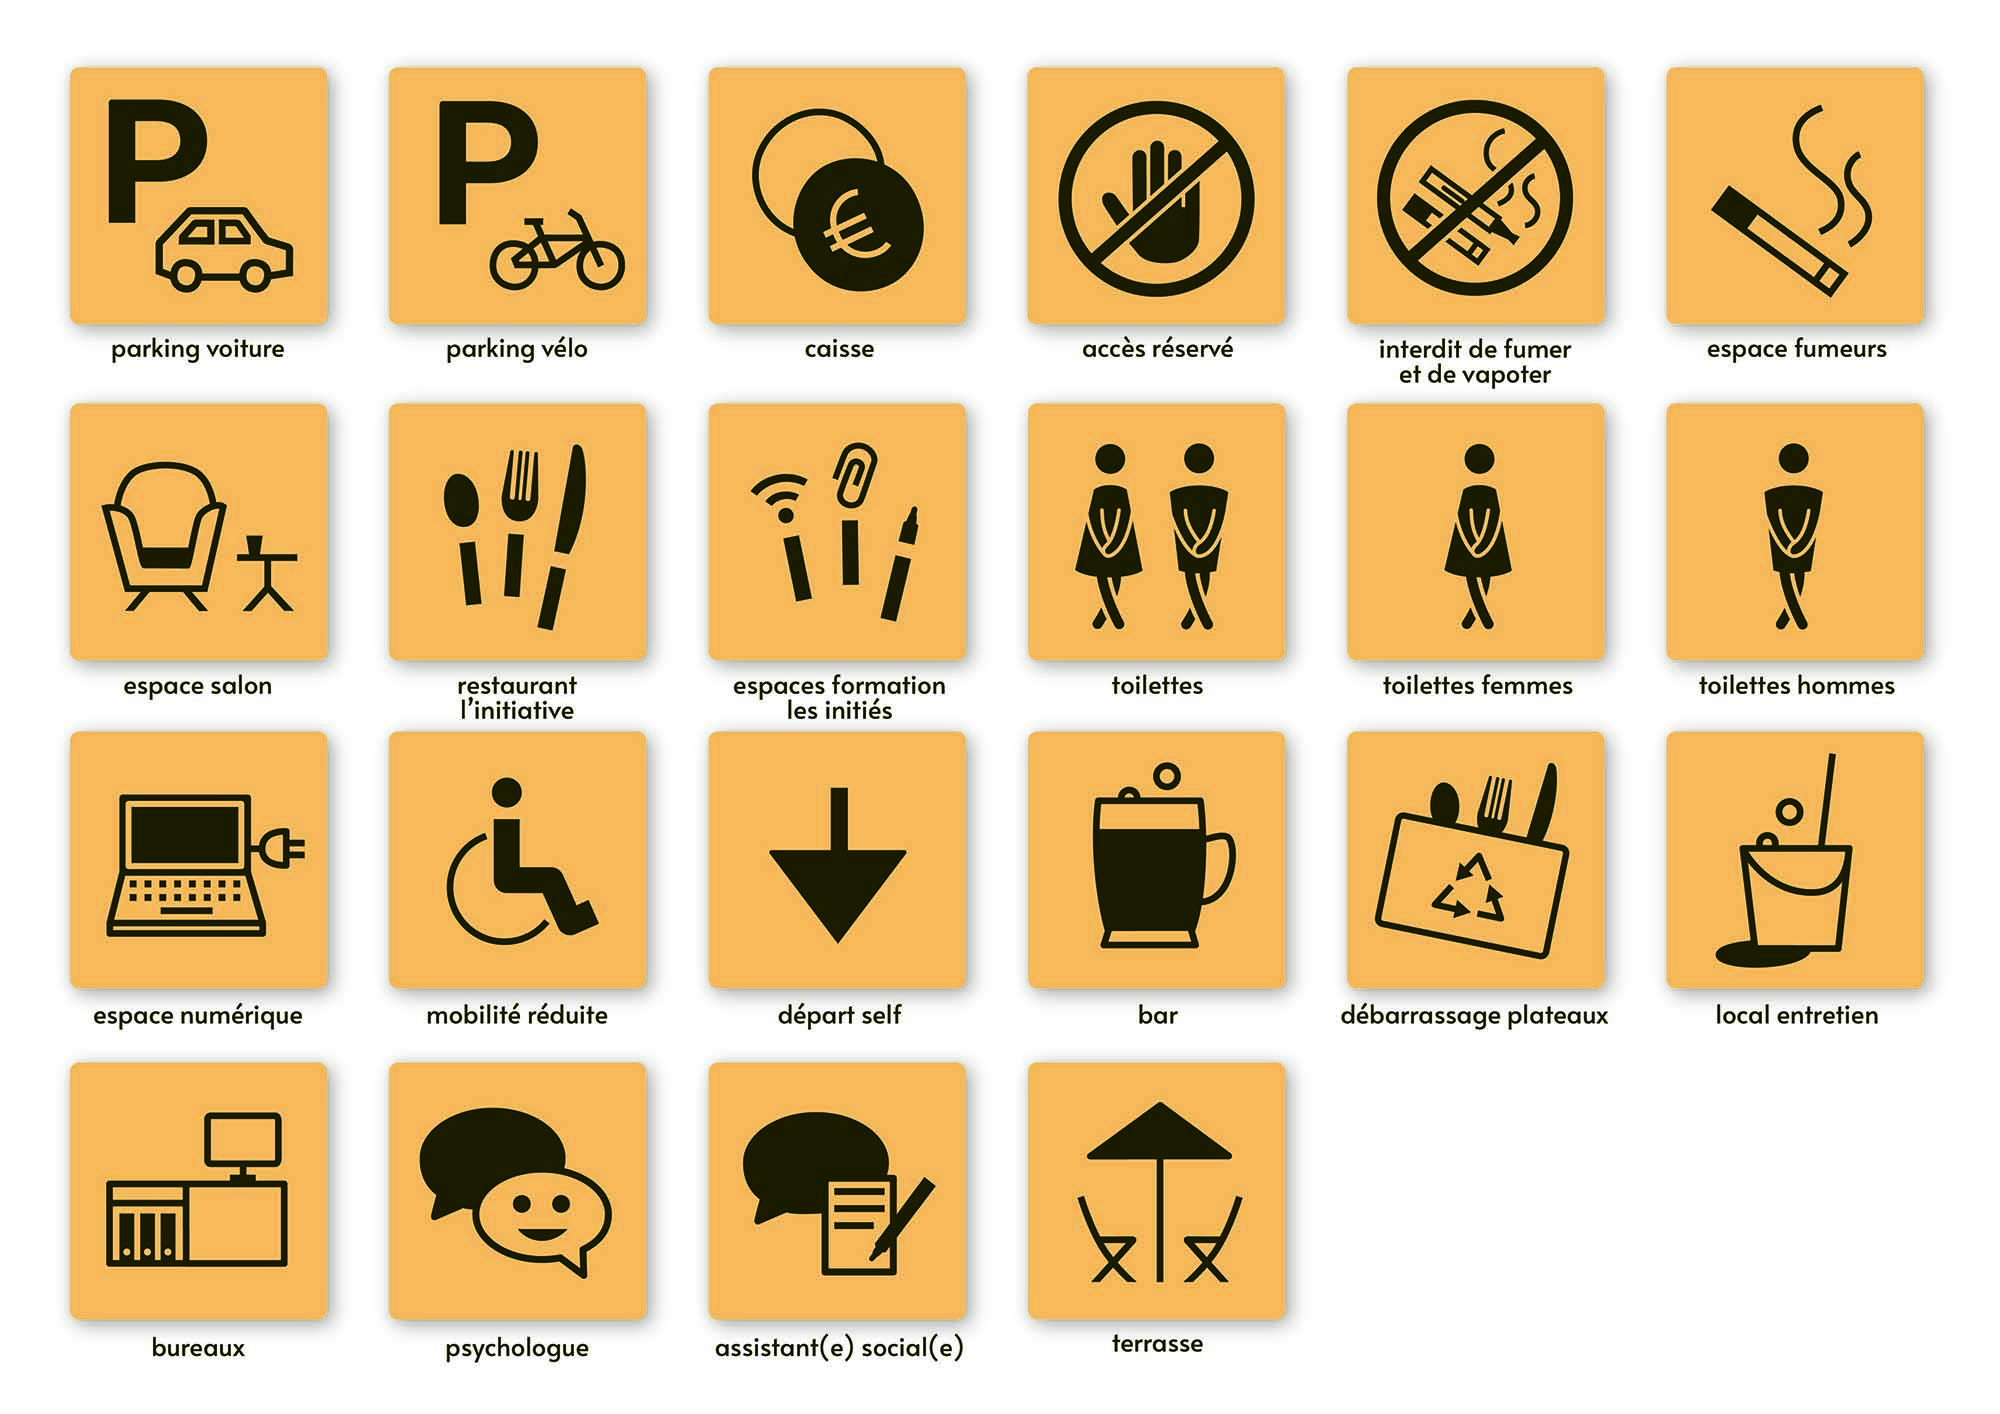 Collection de pictogrammes créés pour le restaurant L'Initiative, version jaune